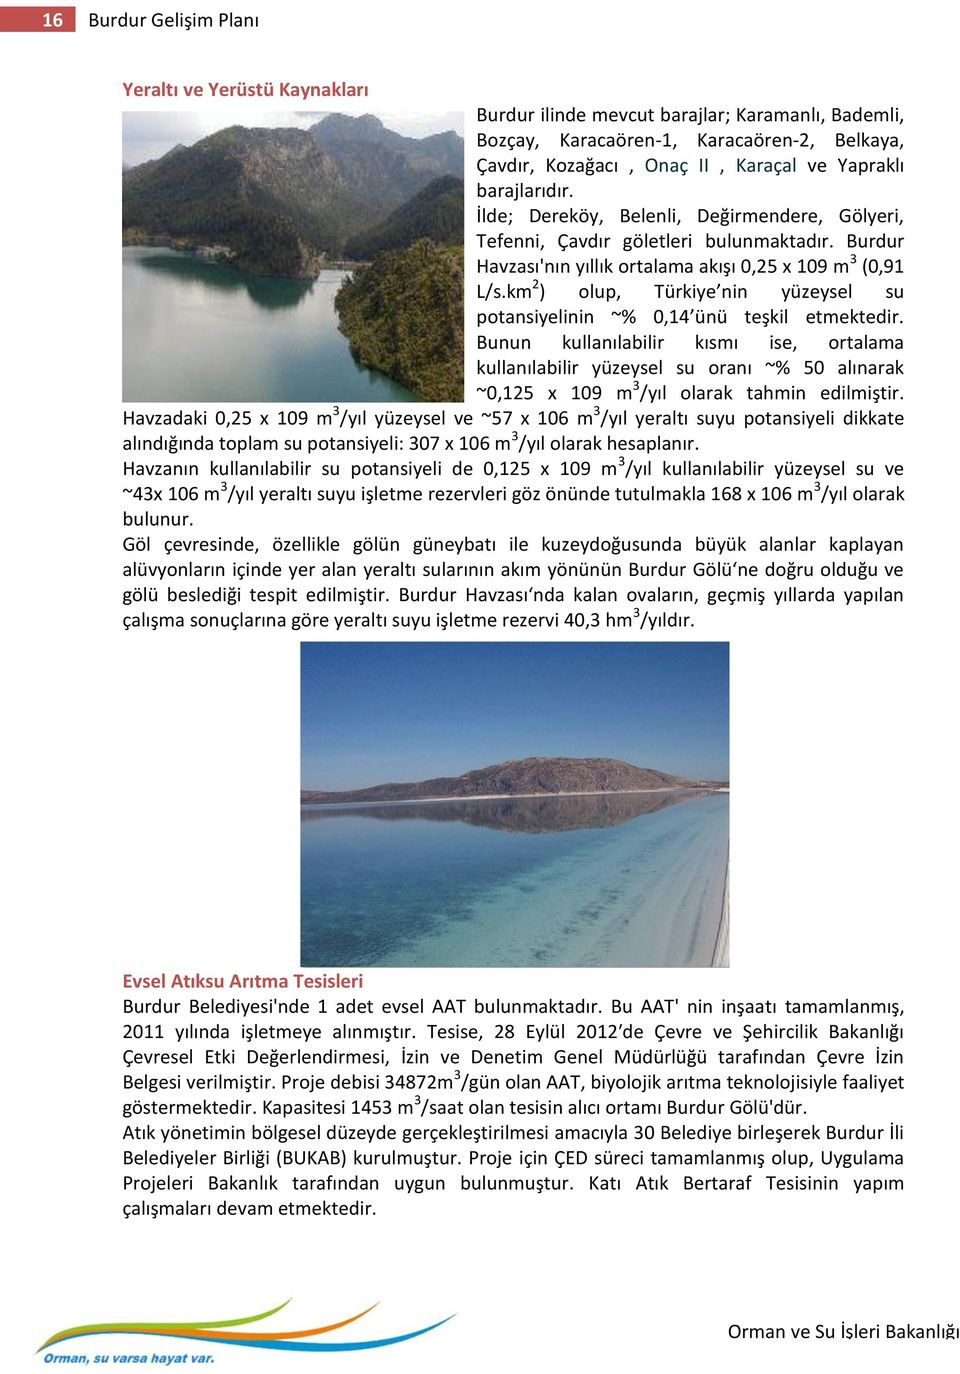 km 2 ) olup, Türkiye nin yüzeysel su potansiyelinin ~% 0,14 ünü teşkil etmektedir.